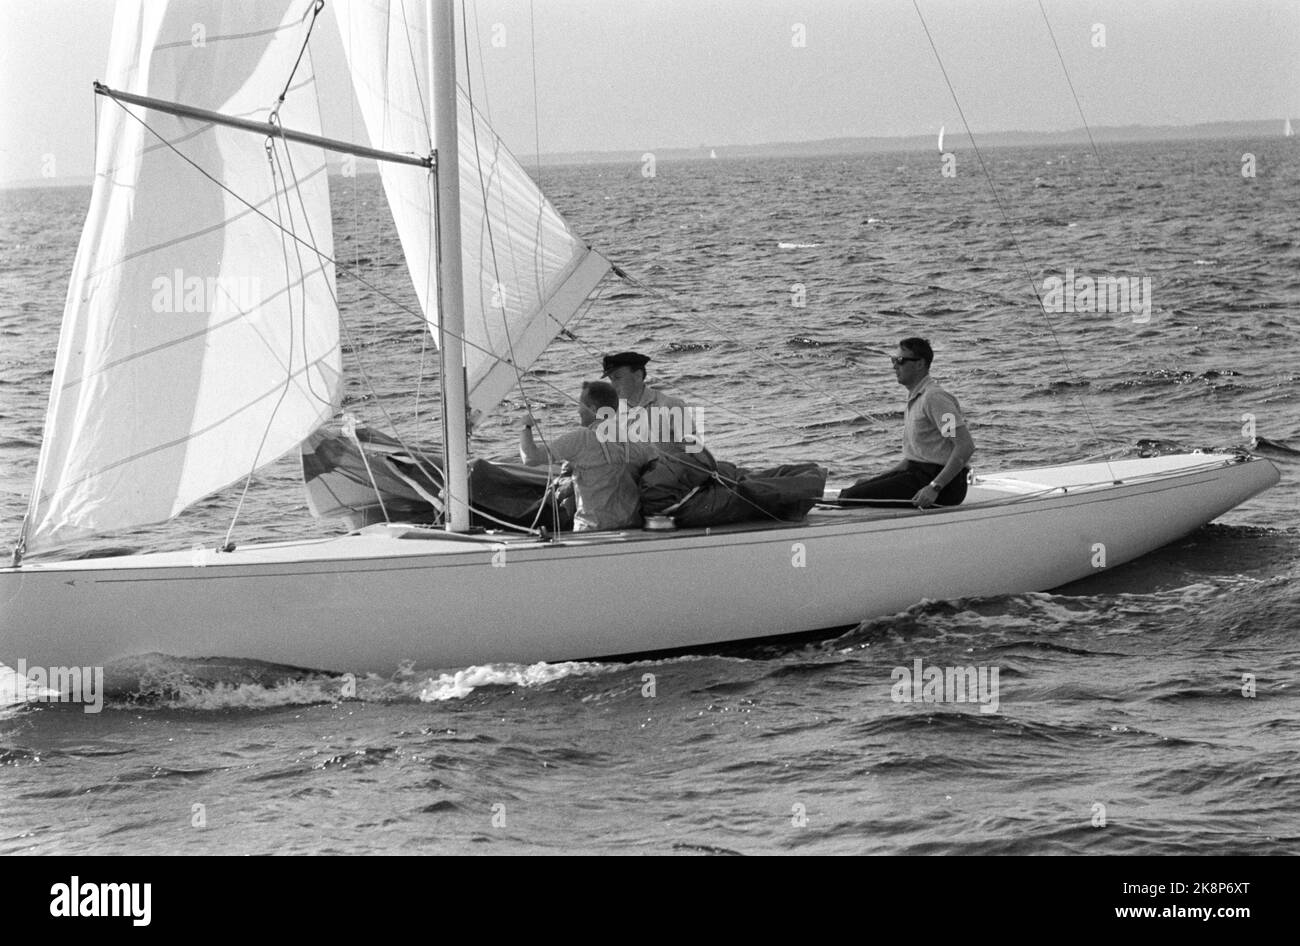 Tokyo, Japon Jeux Olympiques d'été 1964 à Tokyo. Le Prince héritier Harald participe à l'équipe olympique norvégienne de voile. Ici, pendant la voile d'essai avec le bateau 'Fram III'. Photo archive NTB / ntb Banque D'Images